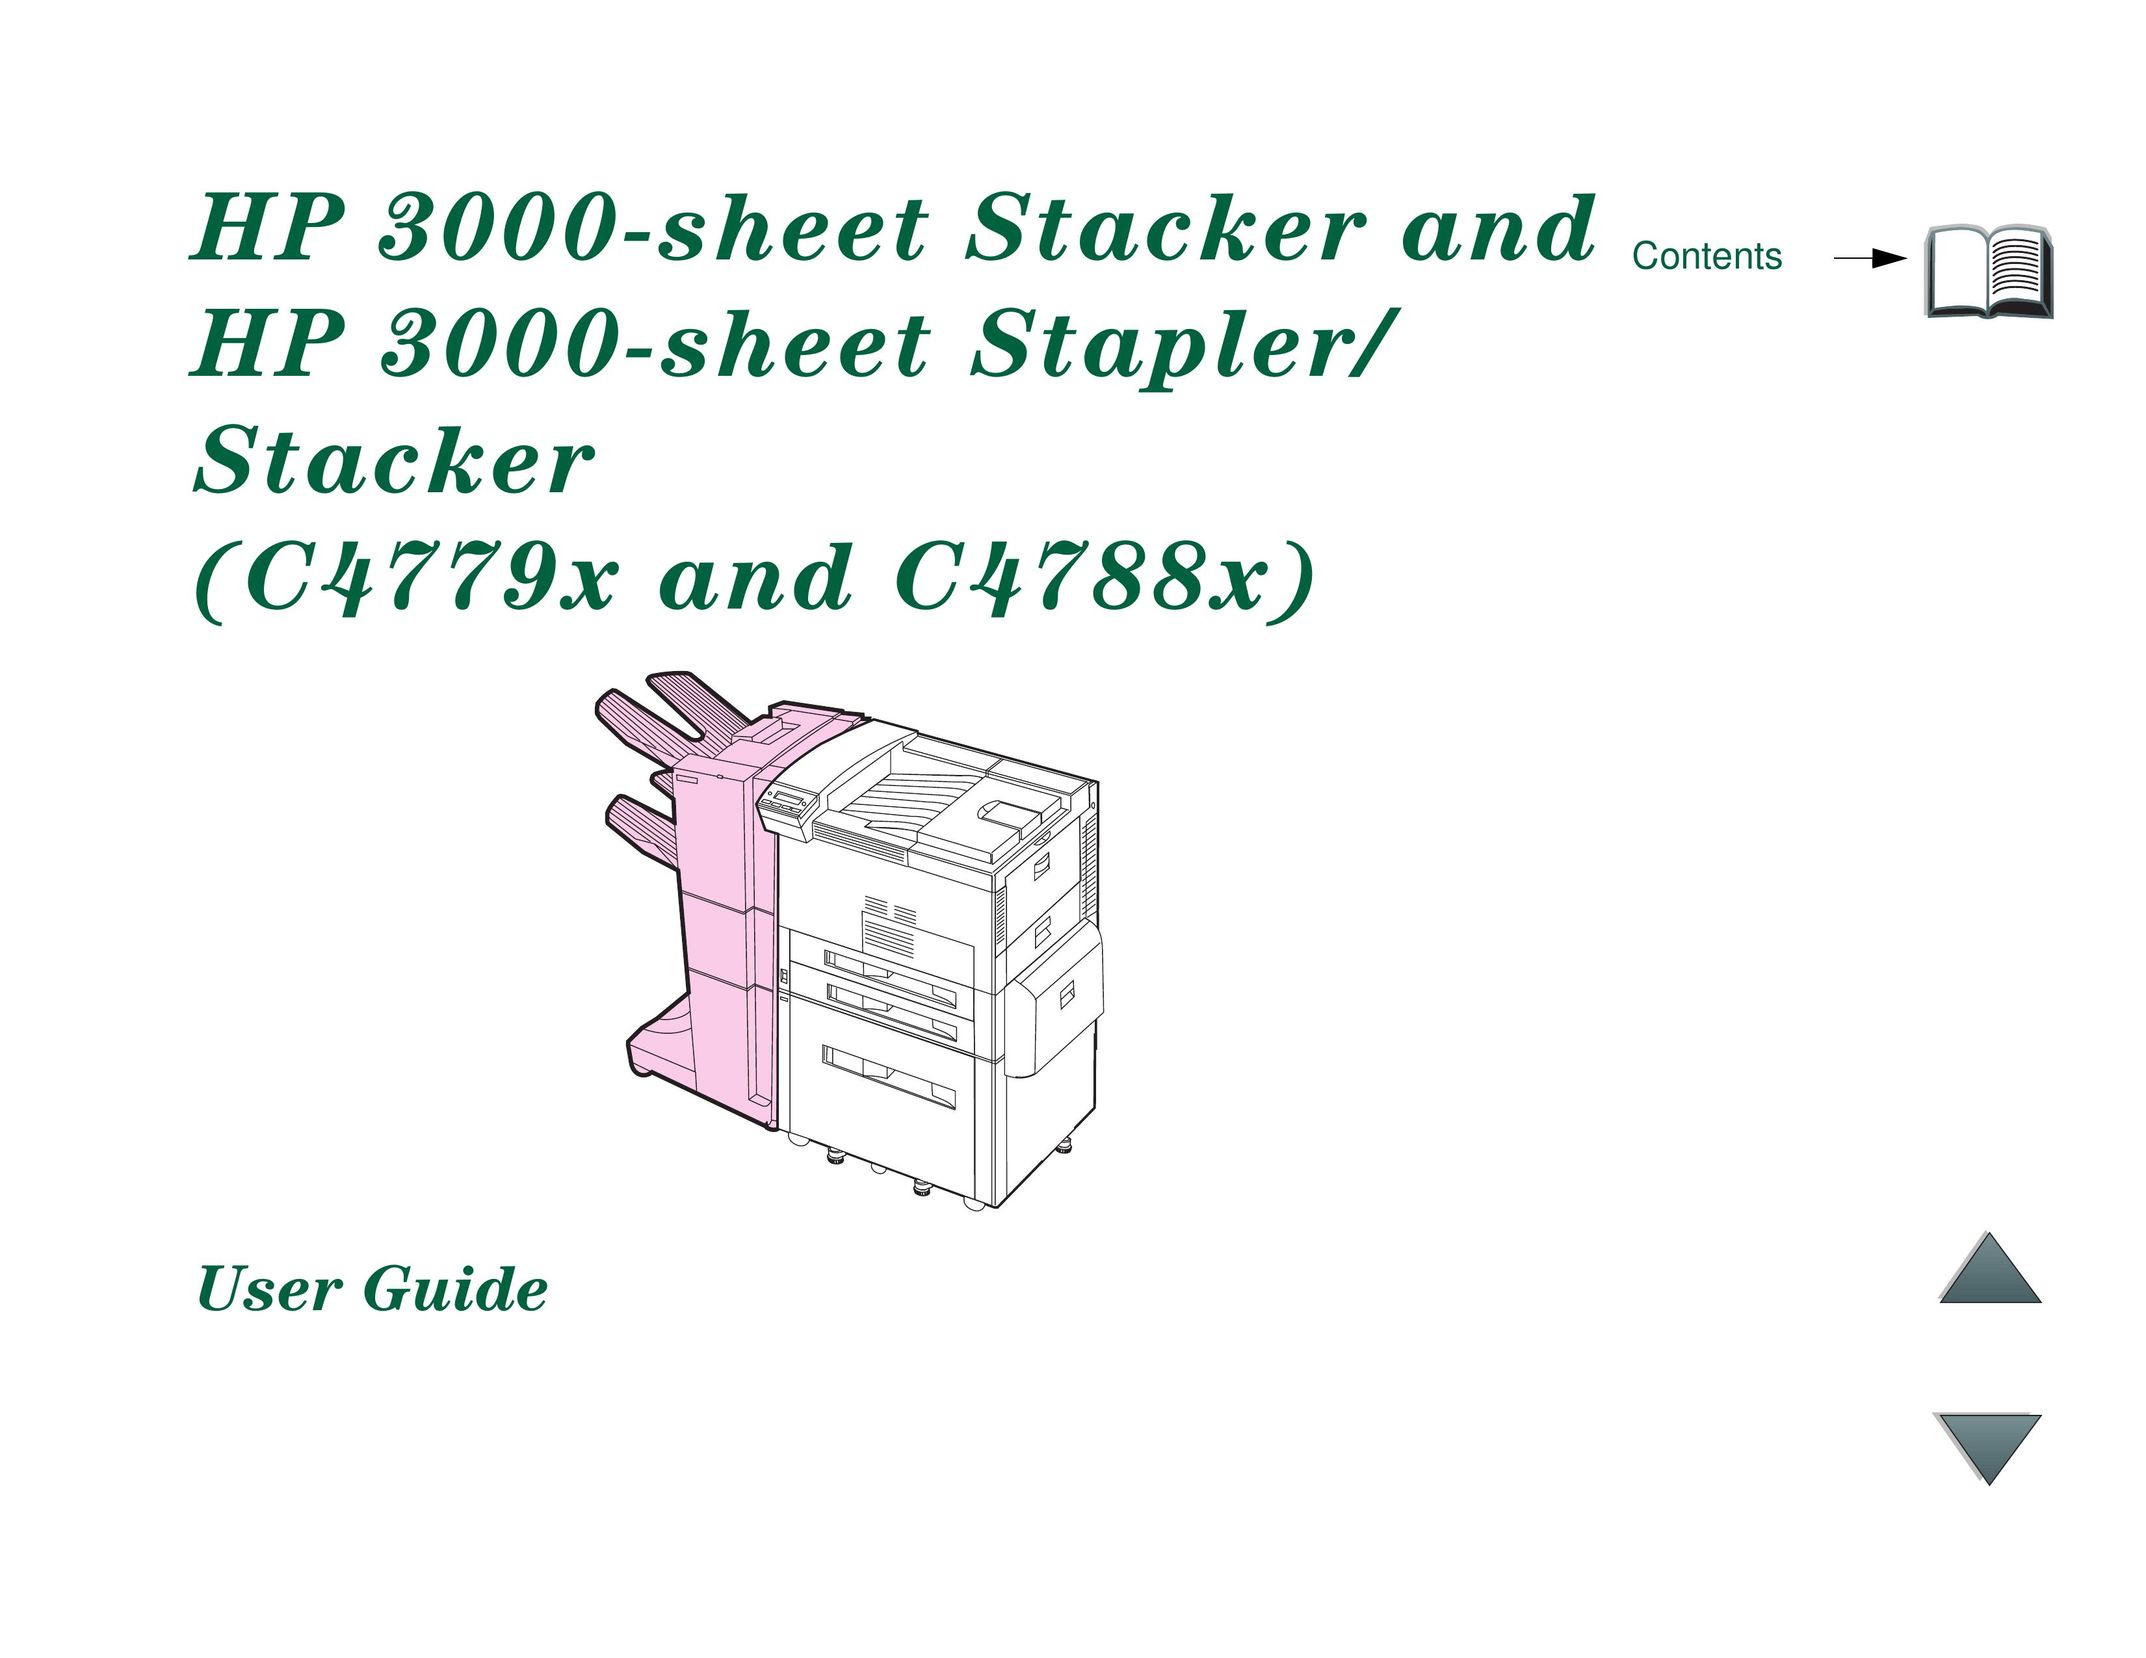 HP (Hewlett-Packard) C4779x Staple Gun User Manual